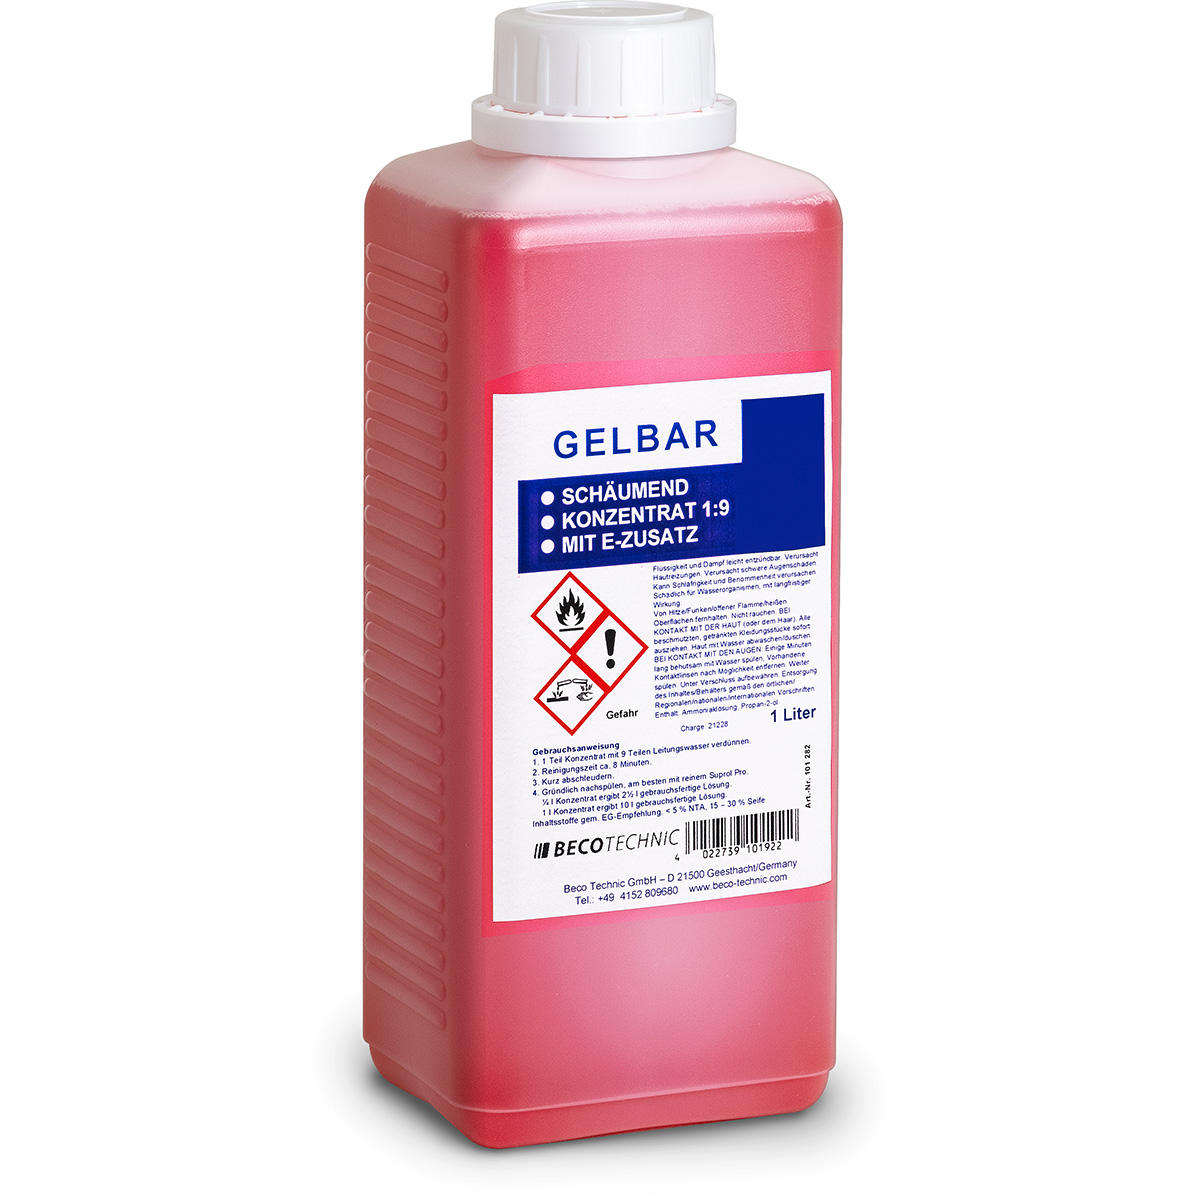 Gelbar solution 1:9 concentrate à 1 litre